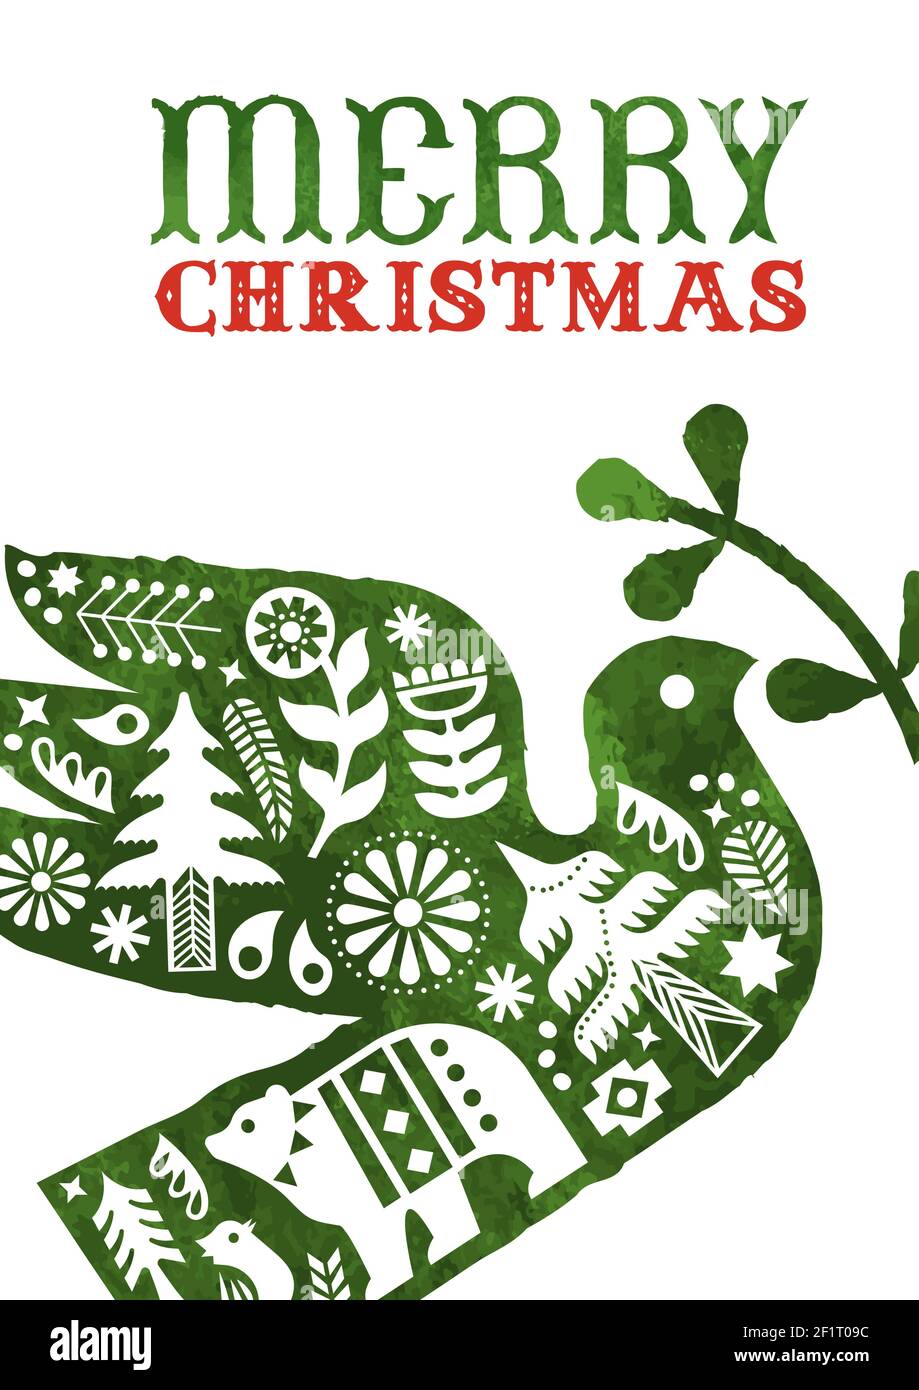 Frohe Weihnachten Grußkarte, vintage skandinavische Kunst Dekoration innen Aquarell Vogel für Urlaub Einladung oder saisonale Grüße. Inklusive Kiefer Stock Vektor